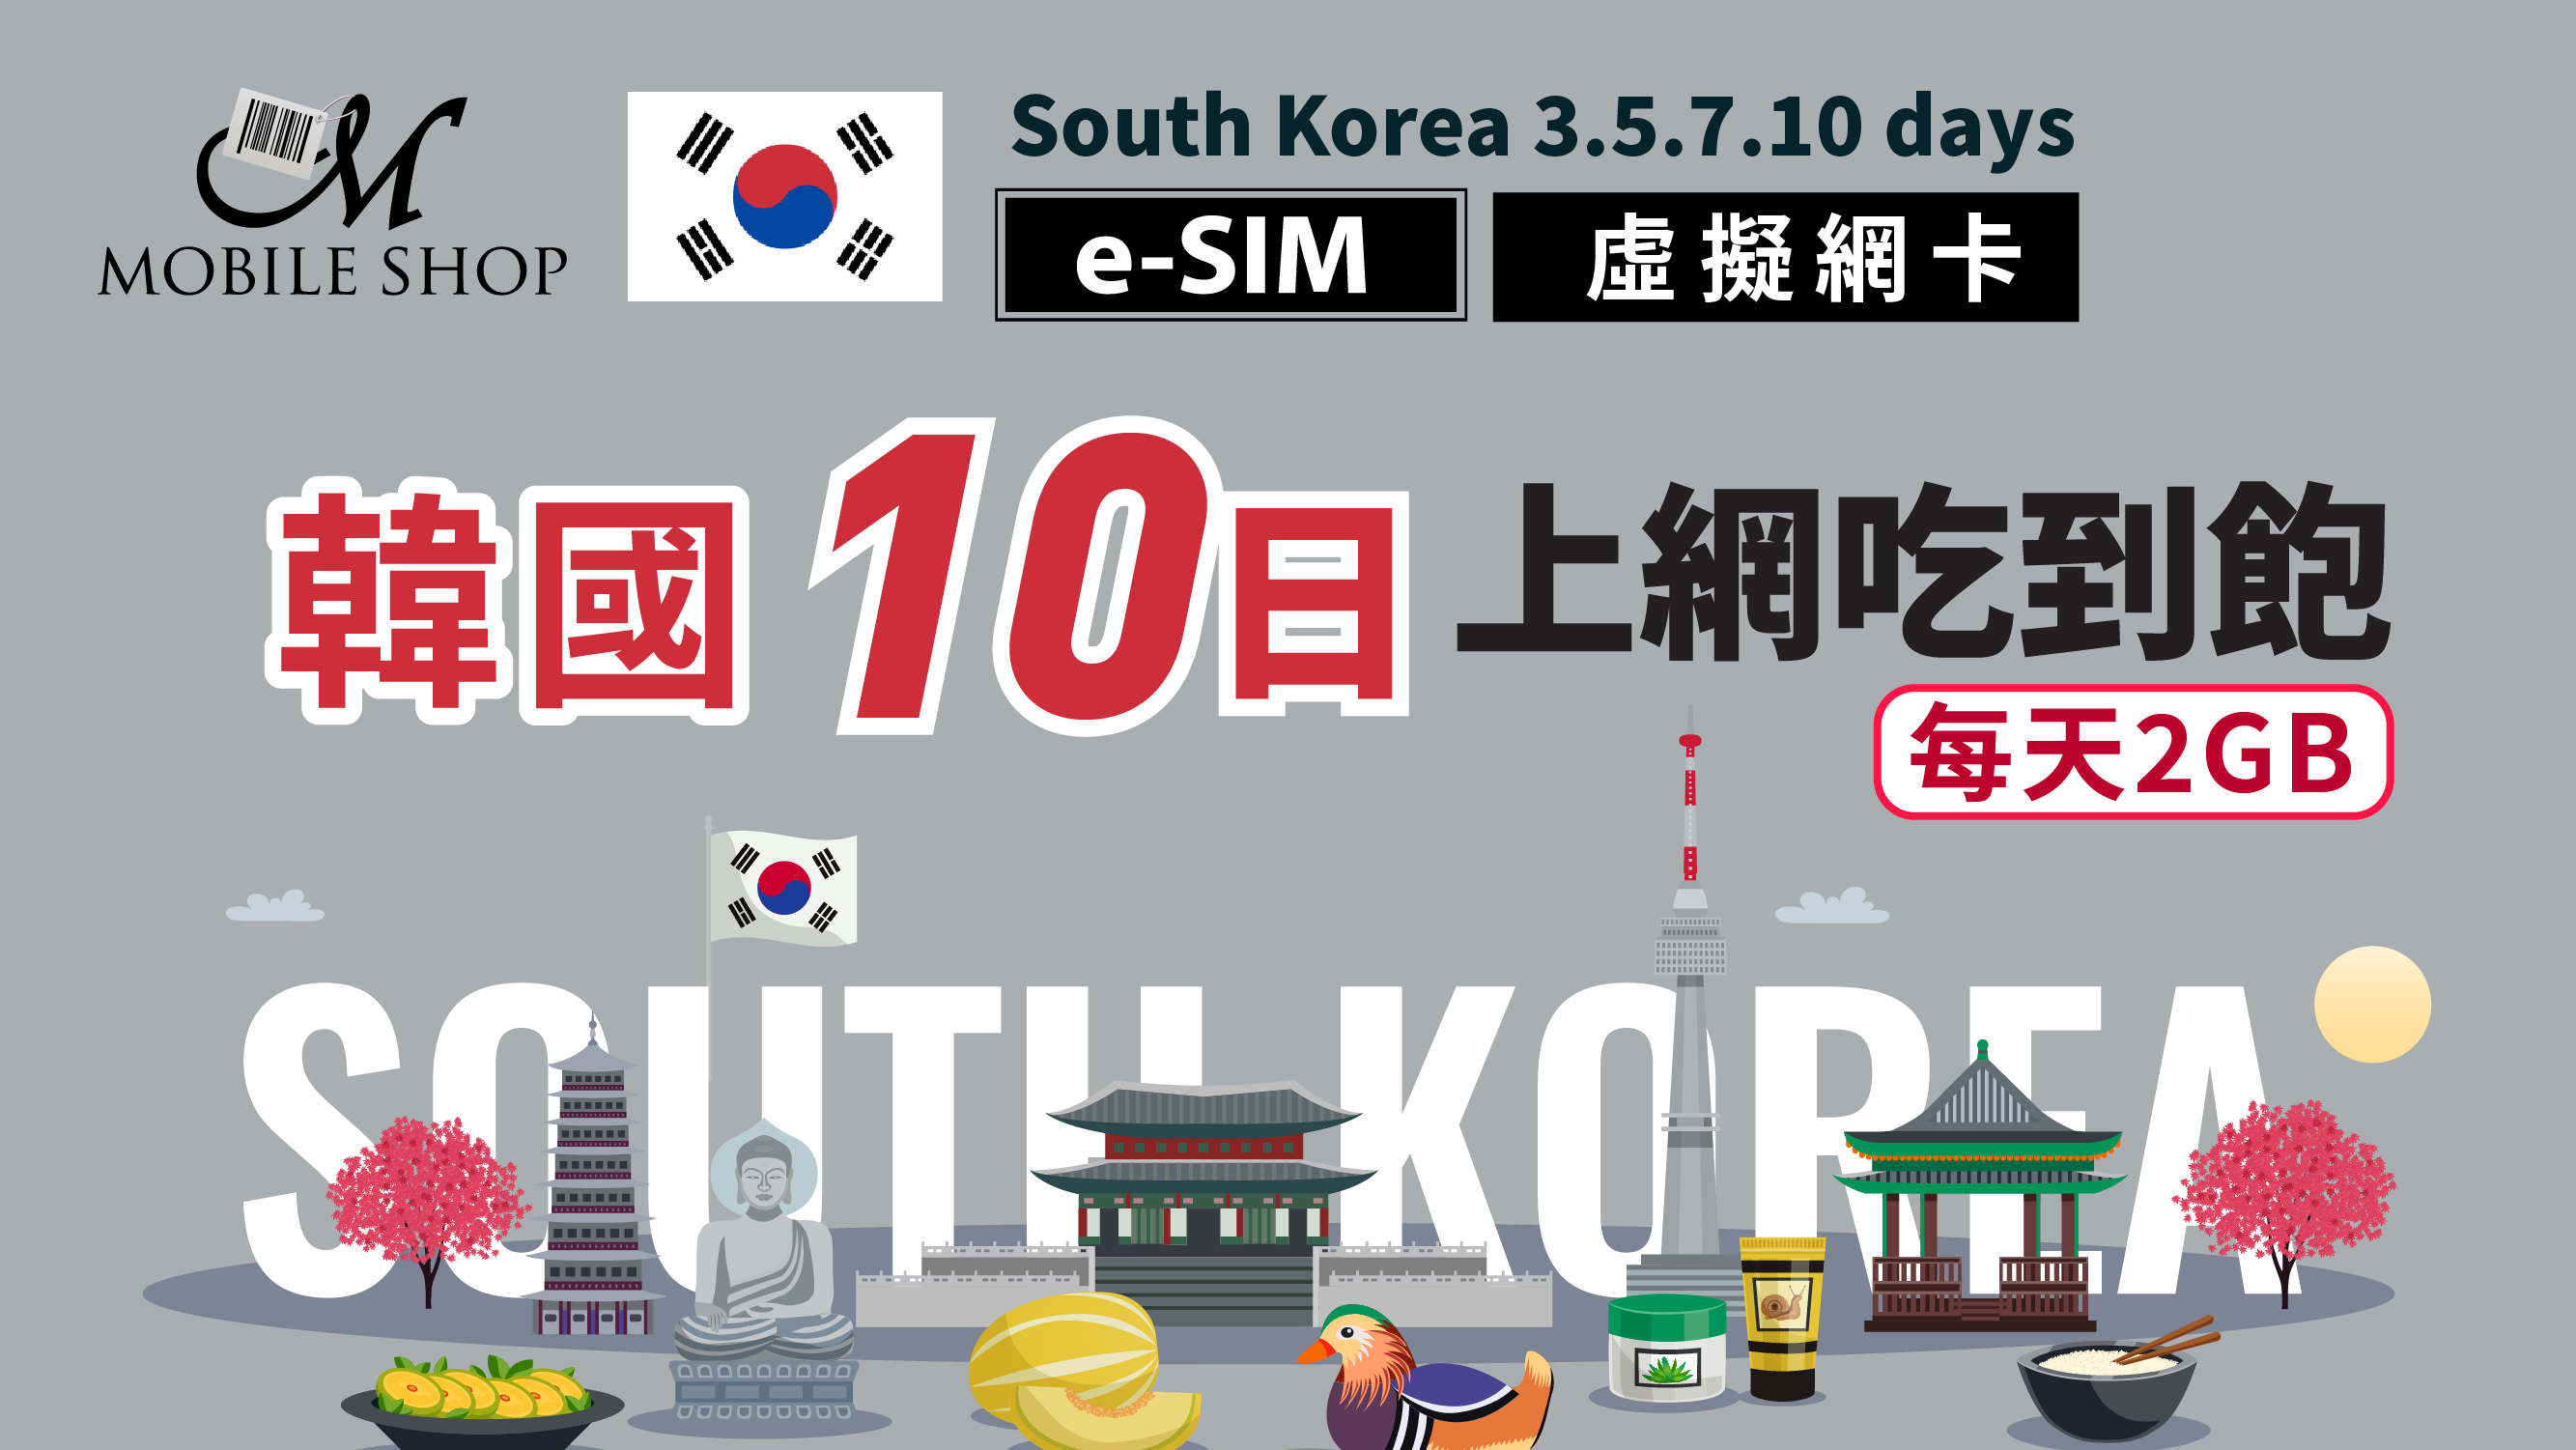 eSIM Korea 10days/2GB day unlimited data